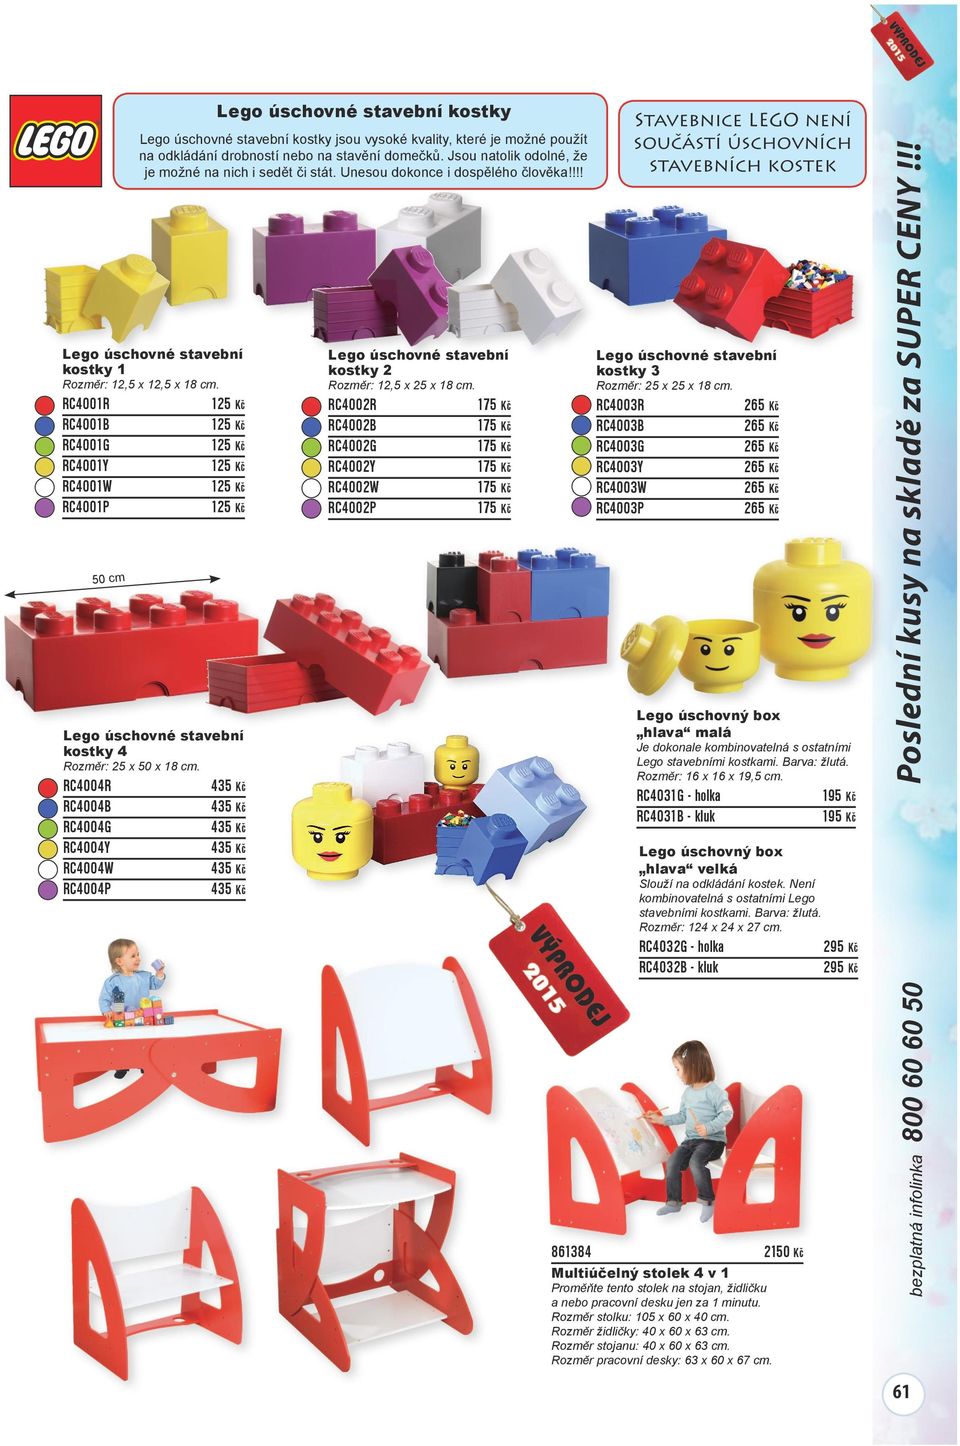 RC4003B RC4003G RC4003Y RC4003W RC4003P Rozměr: 12,5 x 25 x 18 cm. Rozměr: 25 x 25 x 18 cm. 50 cm Lego úschovný box hlava malá kostky 4 Je dokonale kombinovatelná s ostatními Lego stavebními kostkami.